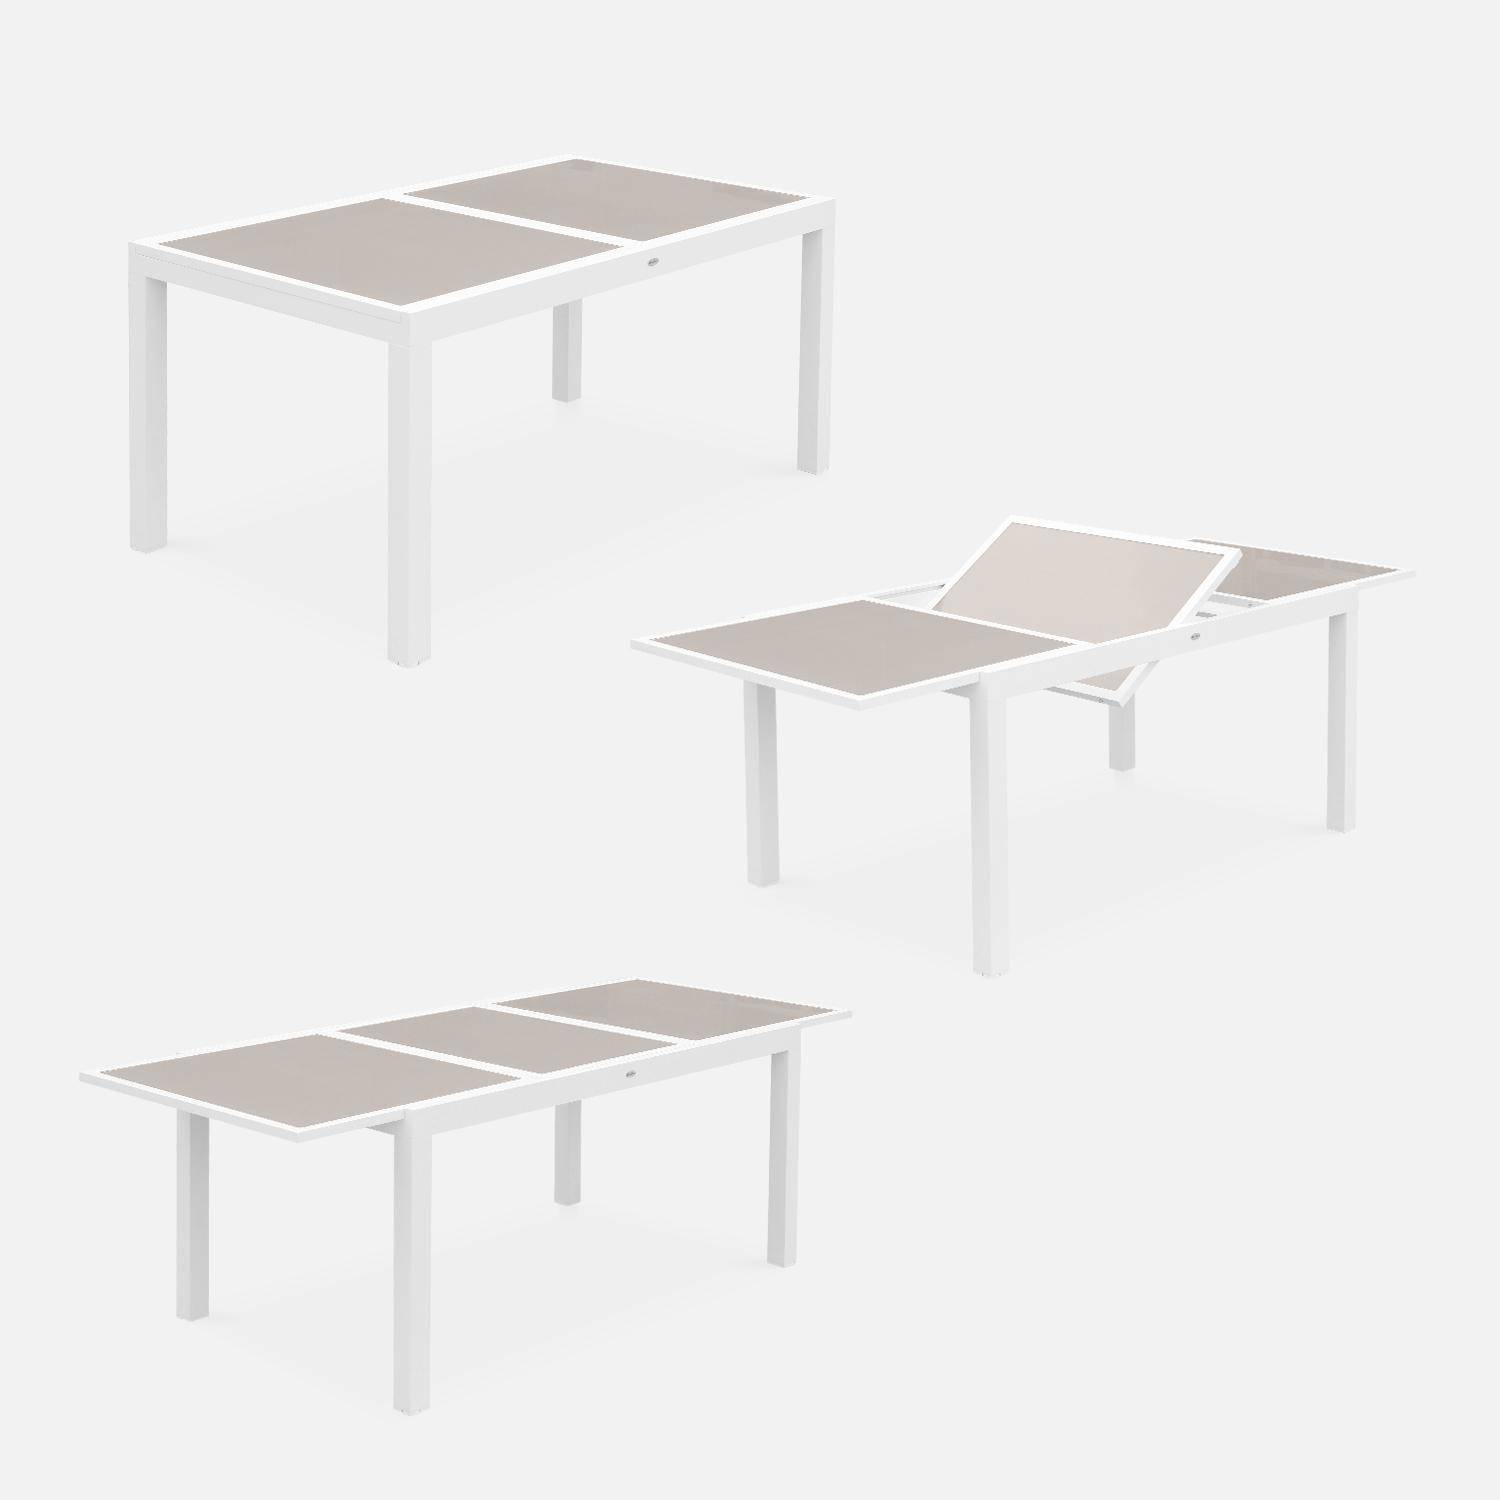 Tavolo da giardino allungabile - modello: Orlando, colore: Talpa - Tavolo in alluminio, dimensioni: 150/210cm, ripiano in vetro, prolunga e 6 sedie in textilene,sweeek,Photo4